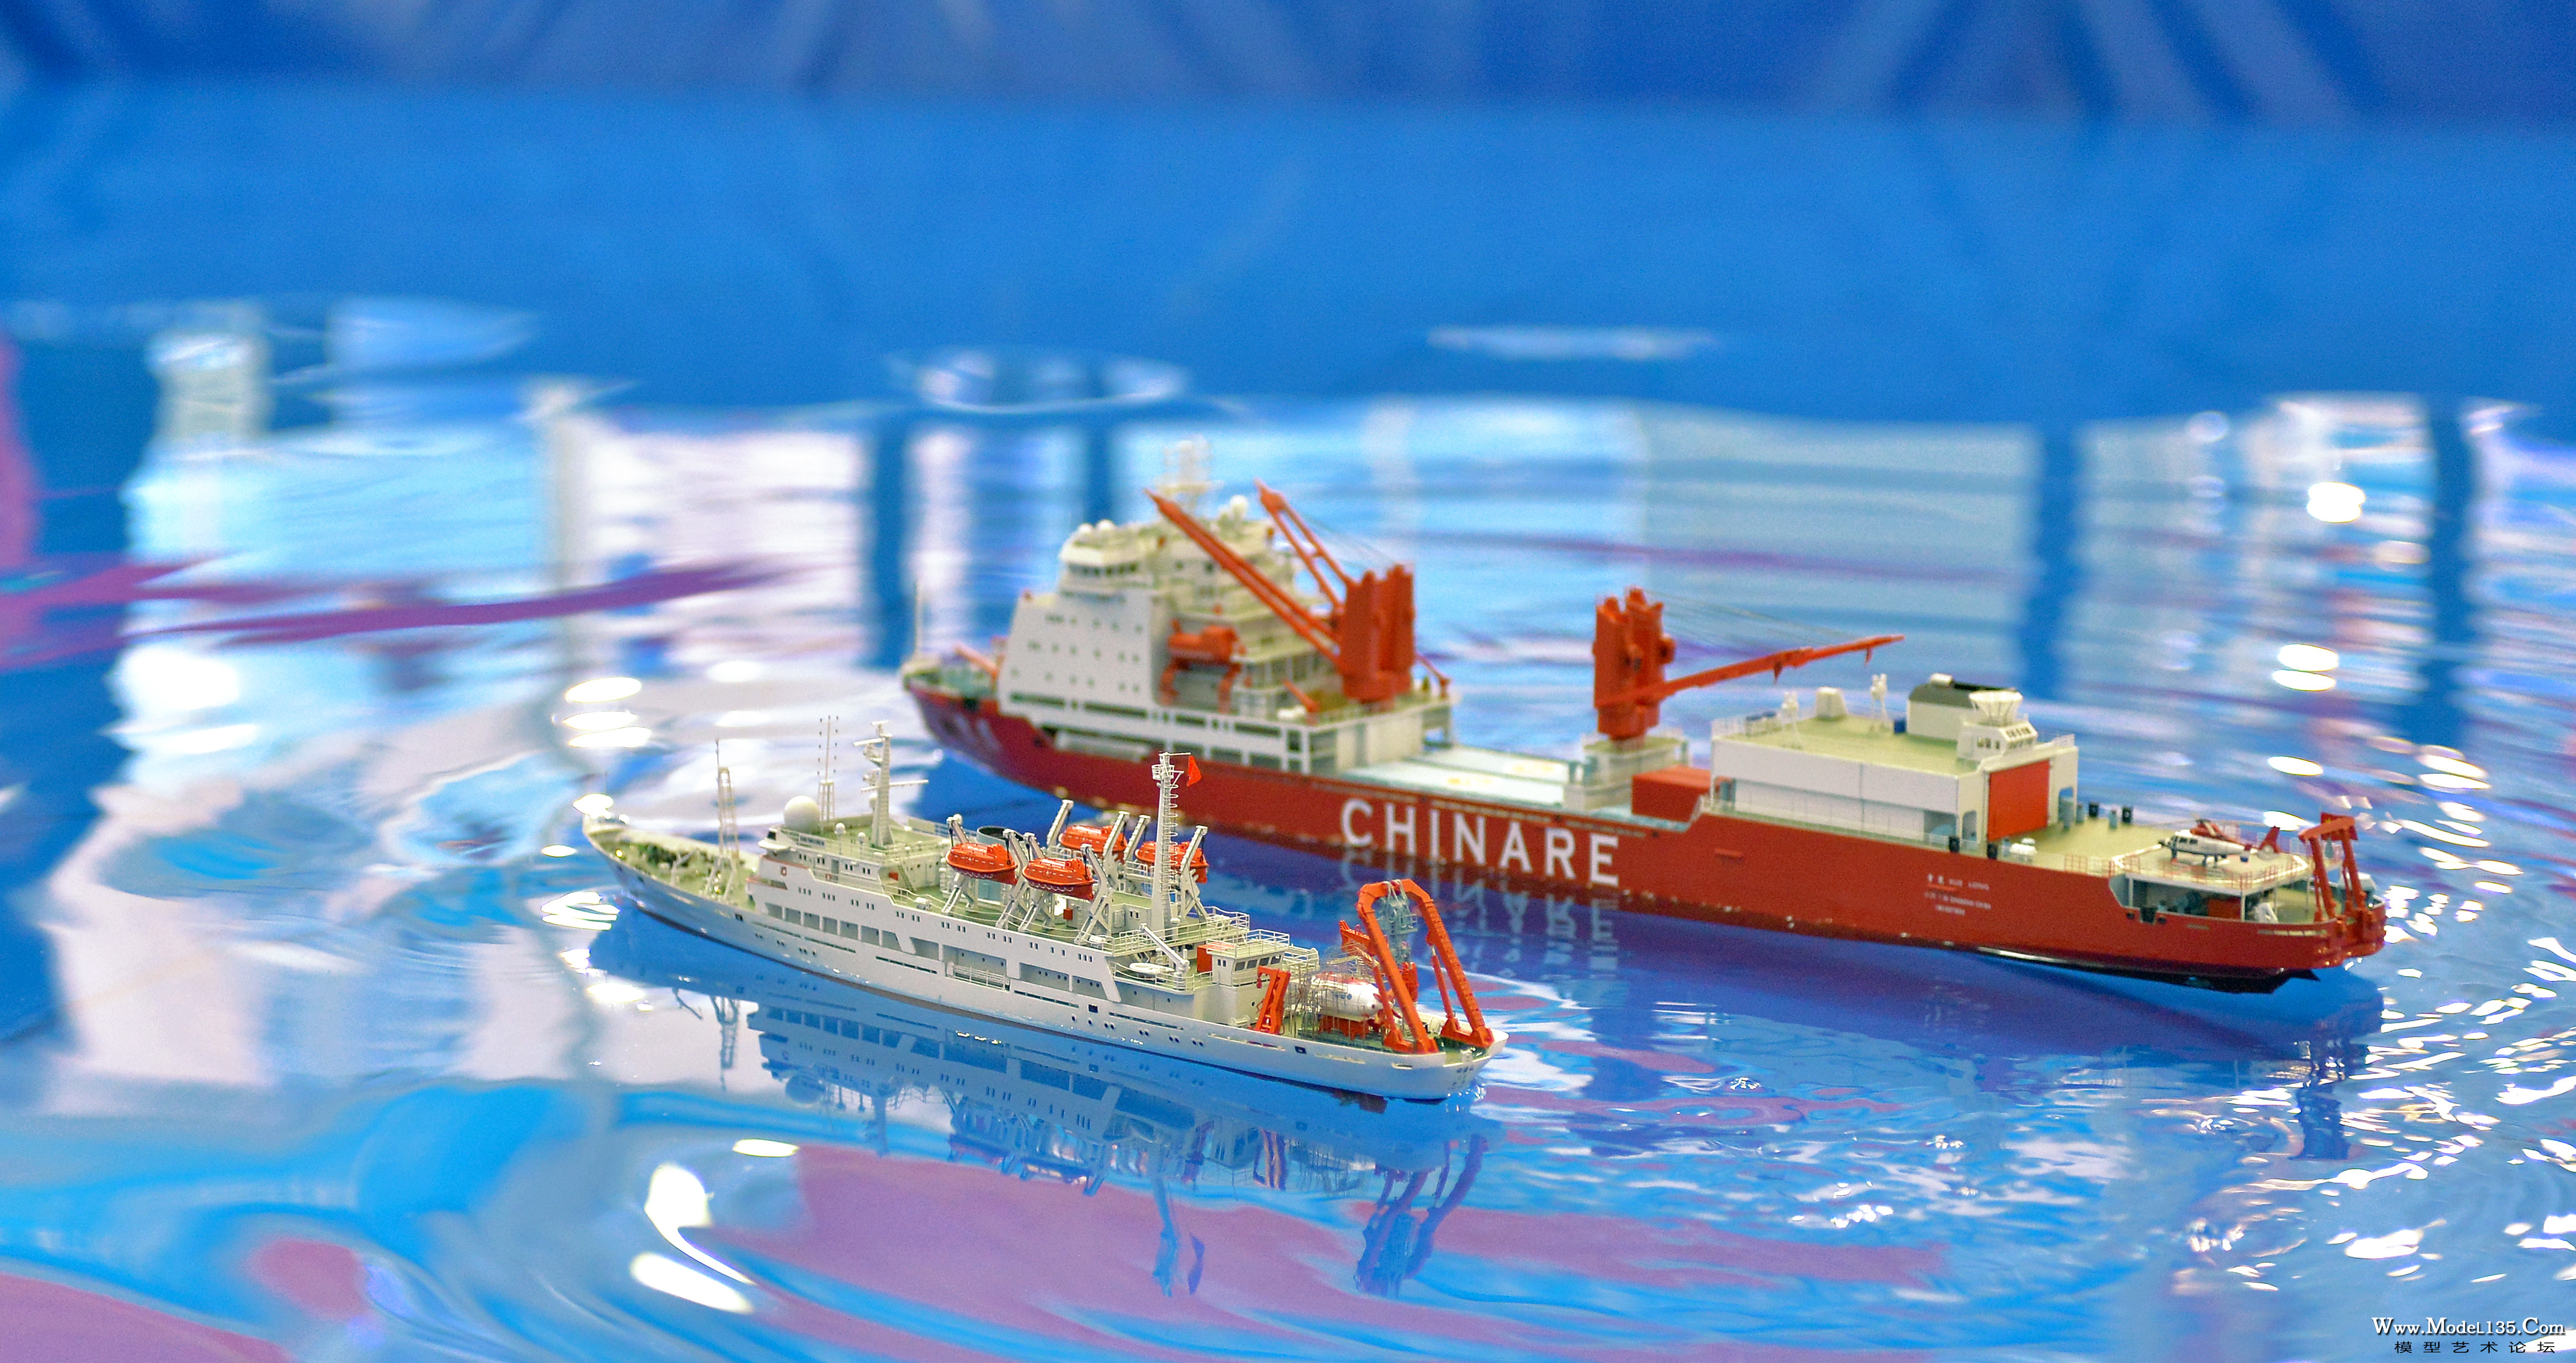 福建海模型队的“双龙”模型船队